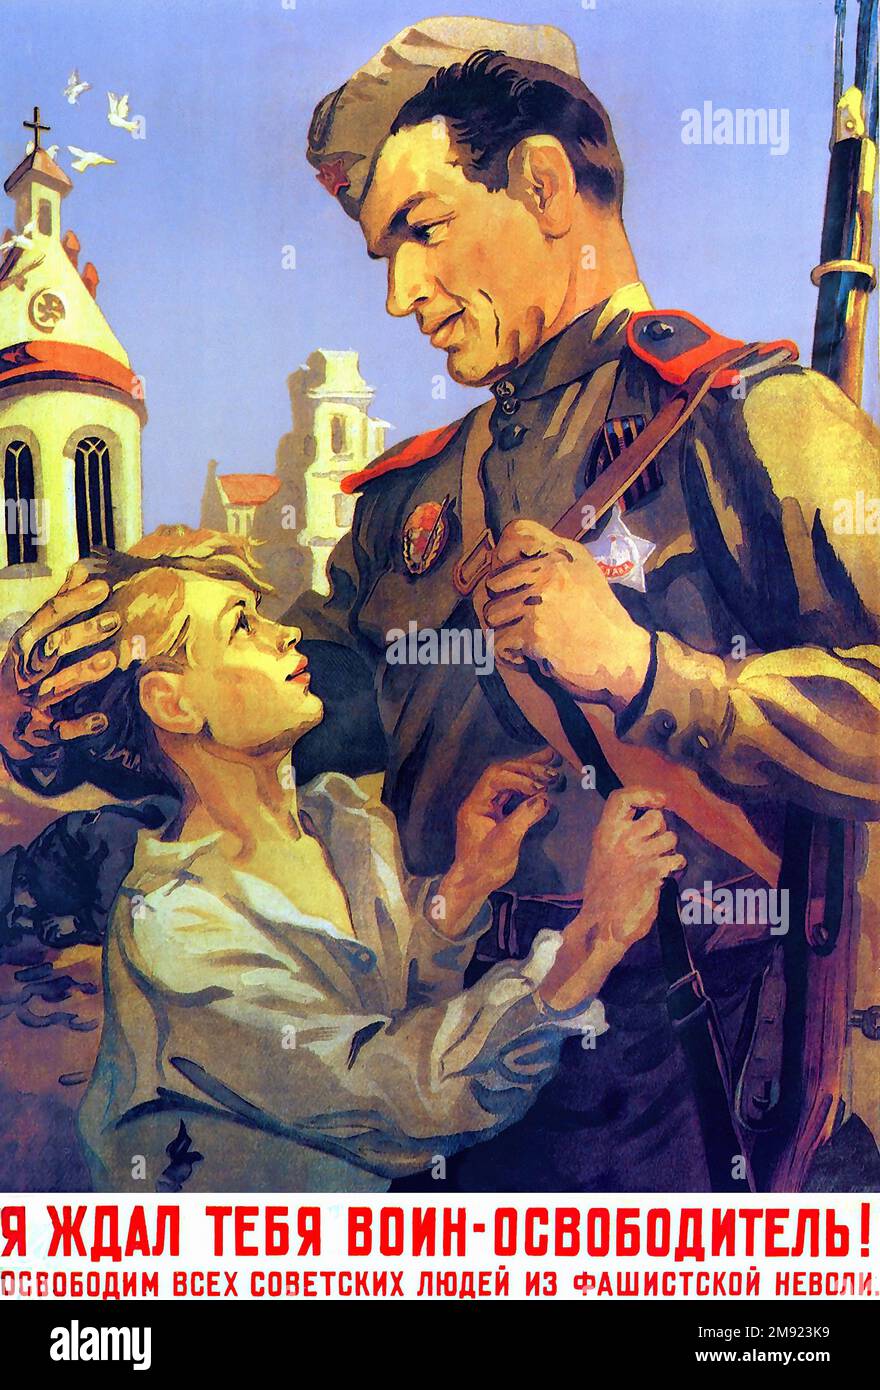 1945 - 'ti sto aspettando!' (Tradotto dal russo) - poster della propaganda sovietica dell'URSS d'epoca Foto Stock